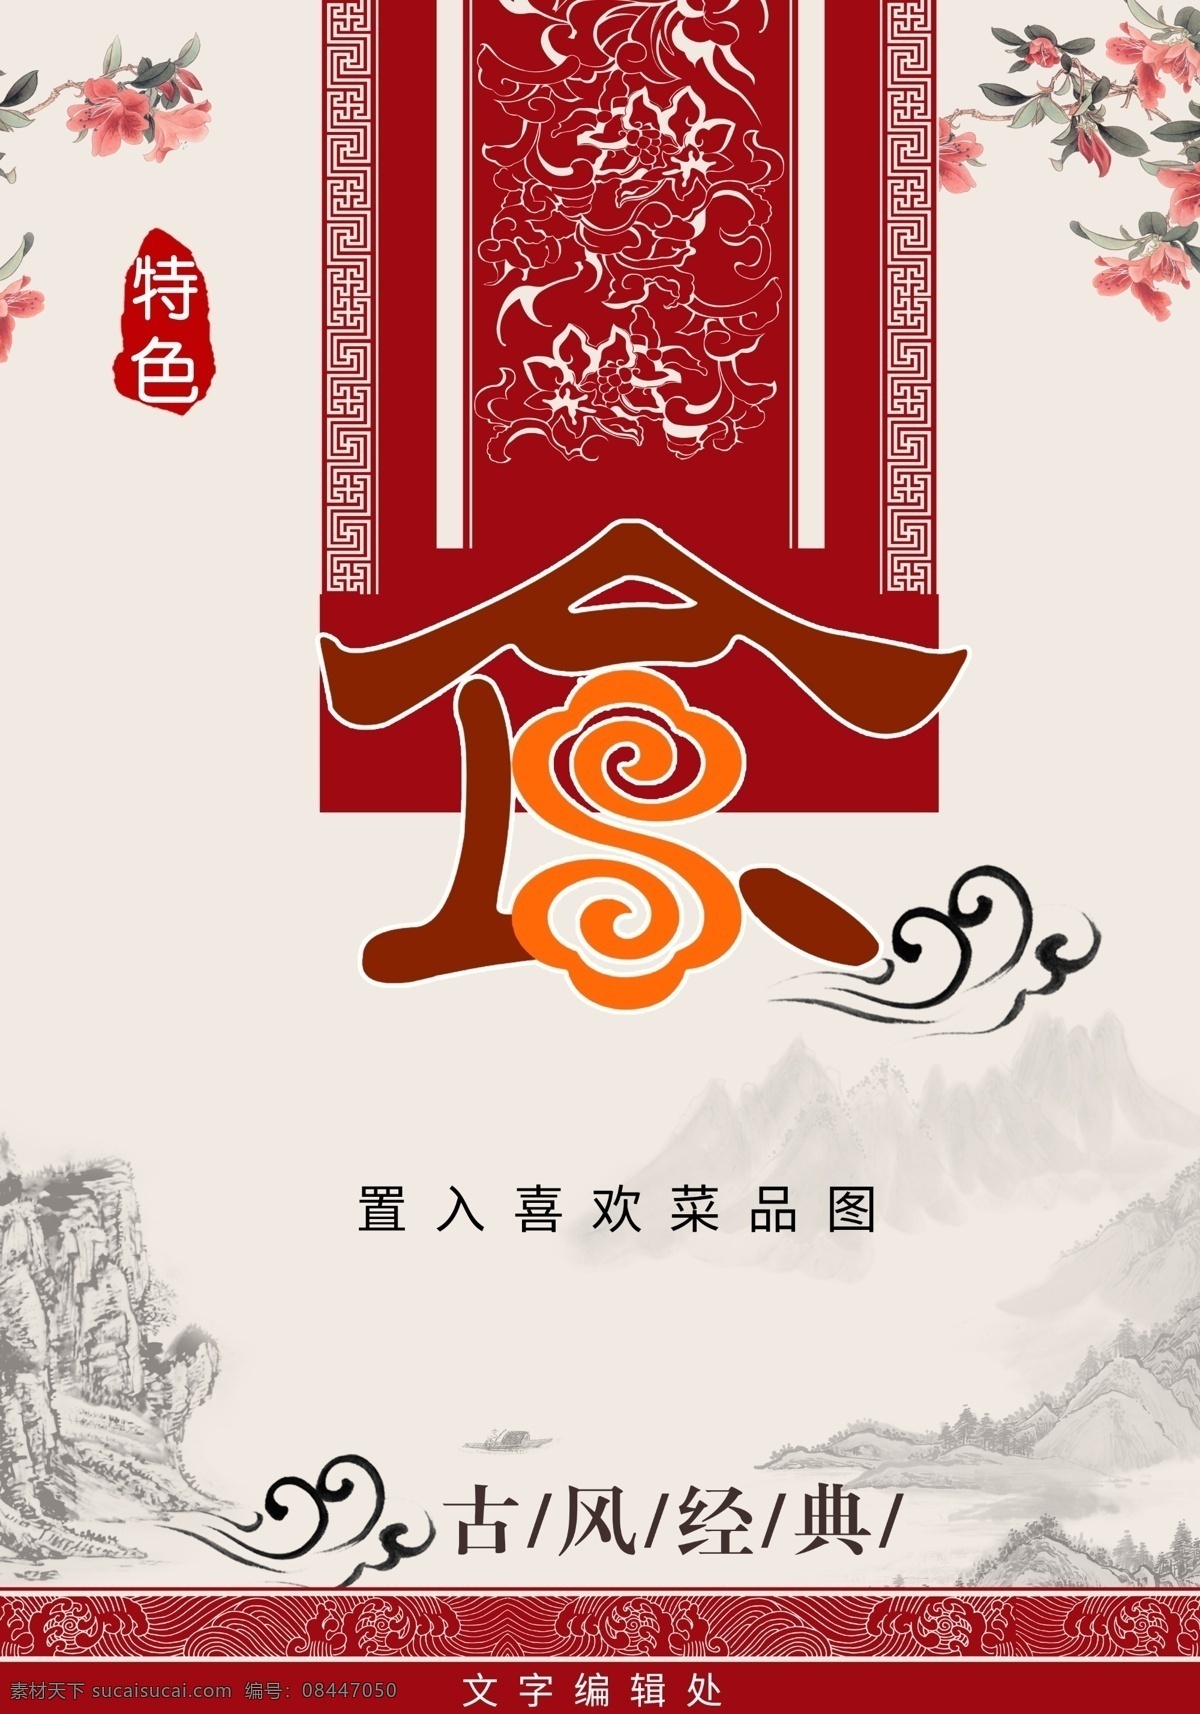 古风美食 古风 中国风 山水画 美食 味道 特色美食 舌尖上的中国 复古 海报 展板